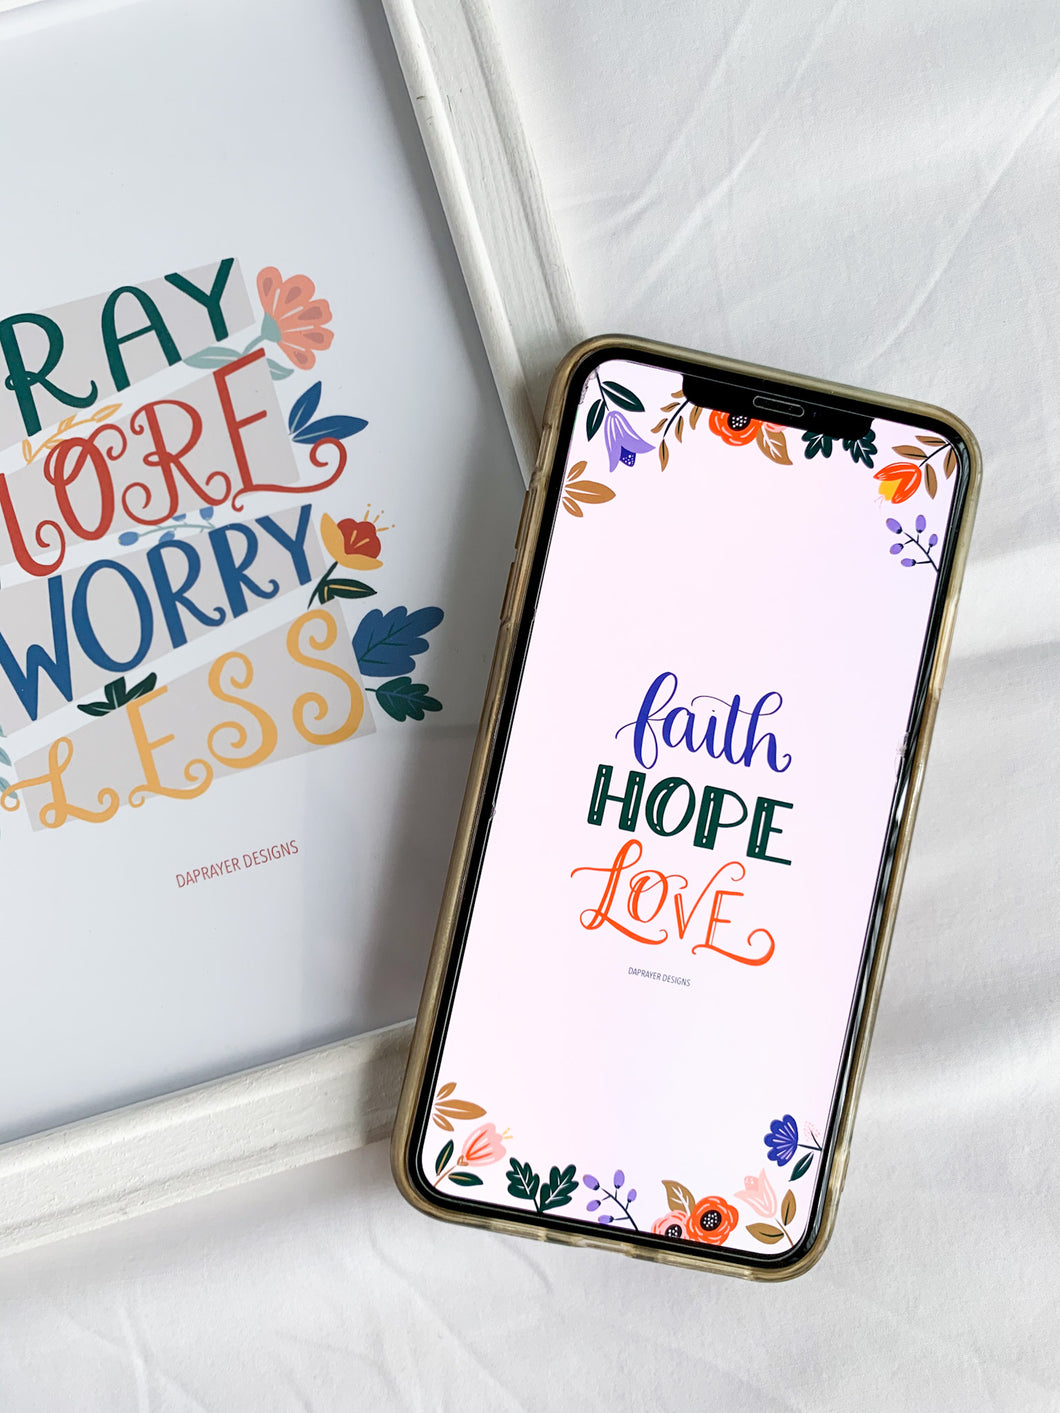 Faith Hope Love   Mobile Wallpaper Daprayer Designs